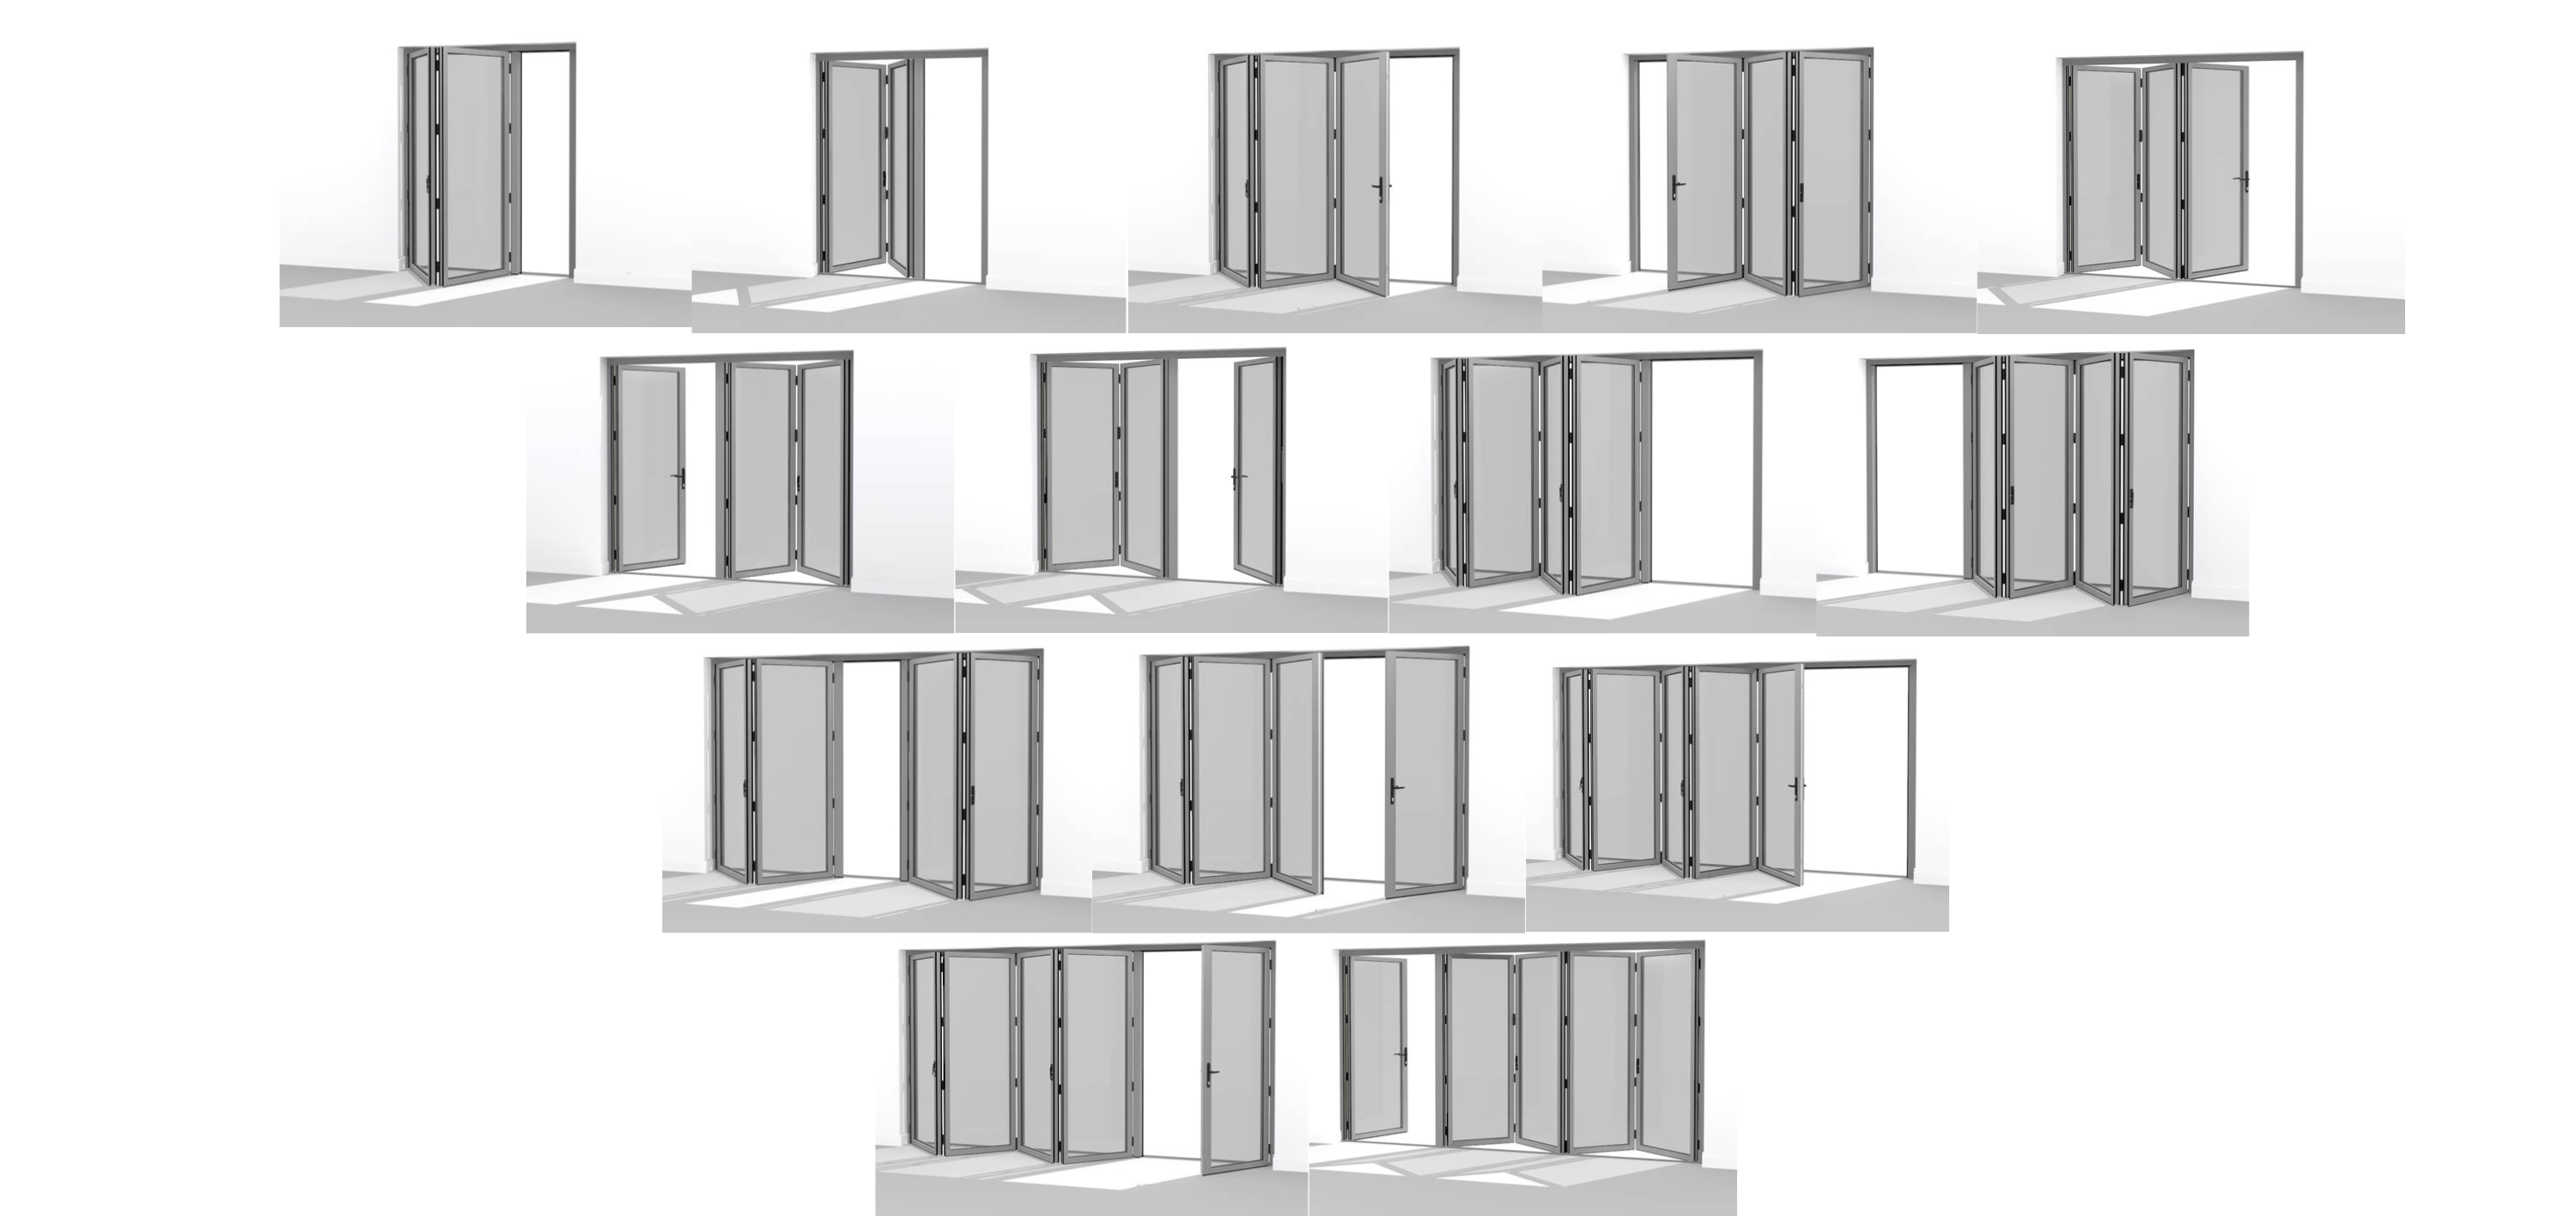 bi folding door configurations